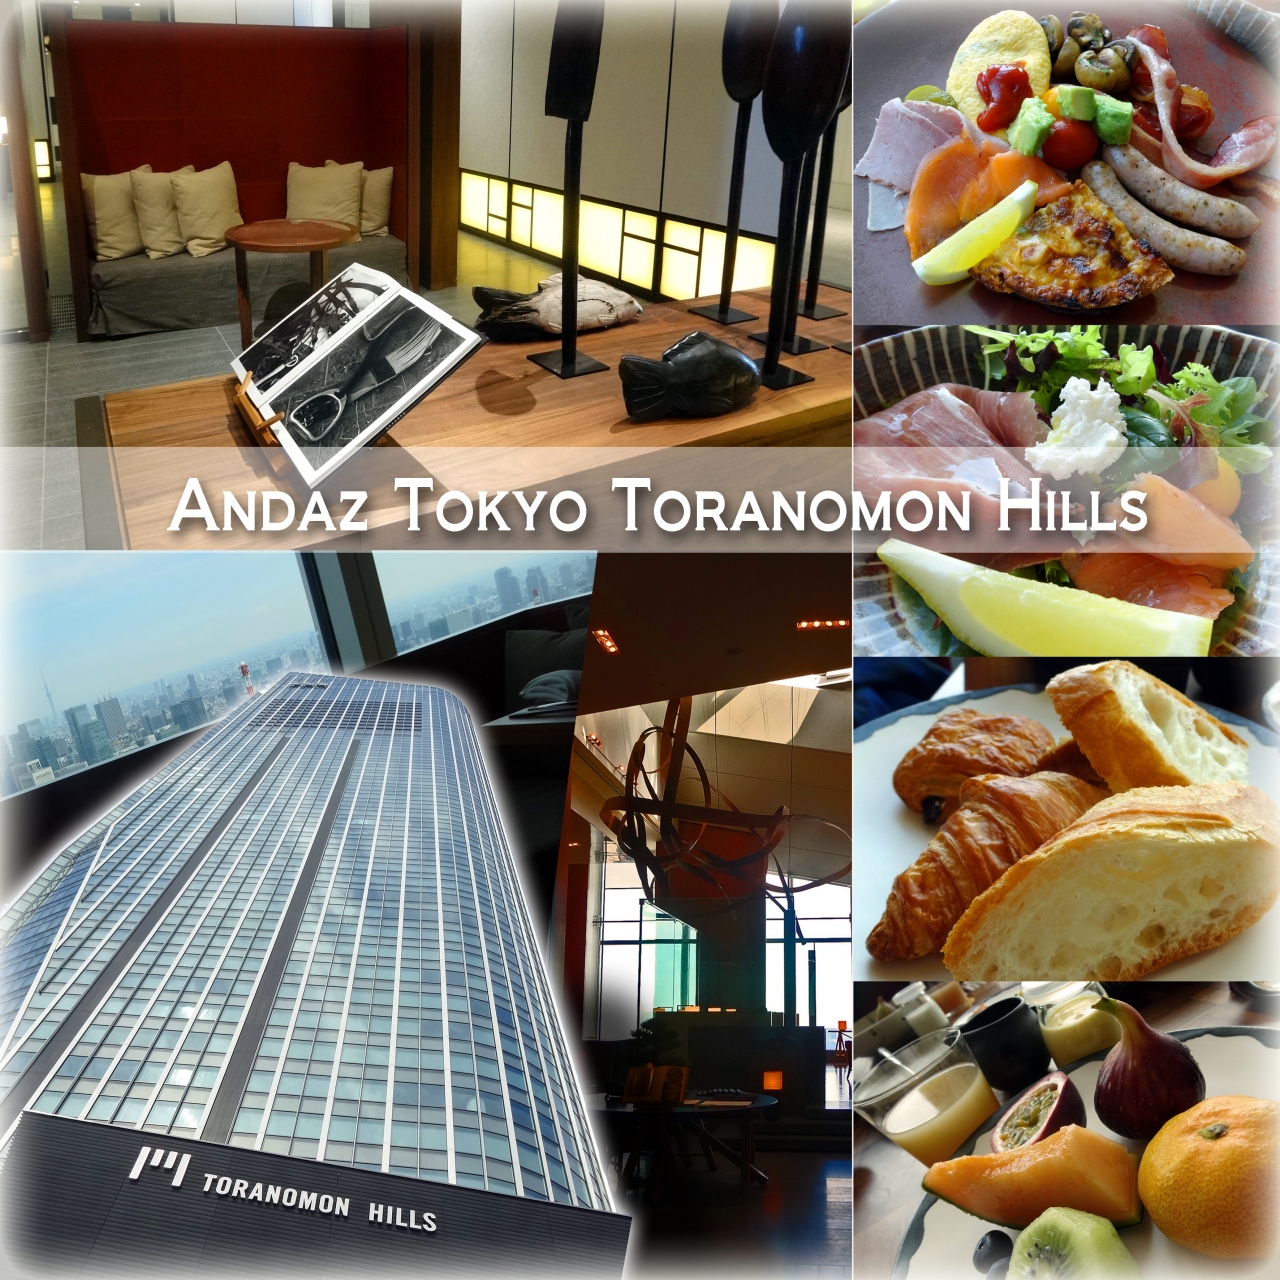 アンダーズ東京 51階 タヴァンで 朝食ブッフェを満喫しました 新橋 東京 の旅行記 ブログ By ルートマスターさん フォートラベル